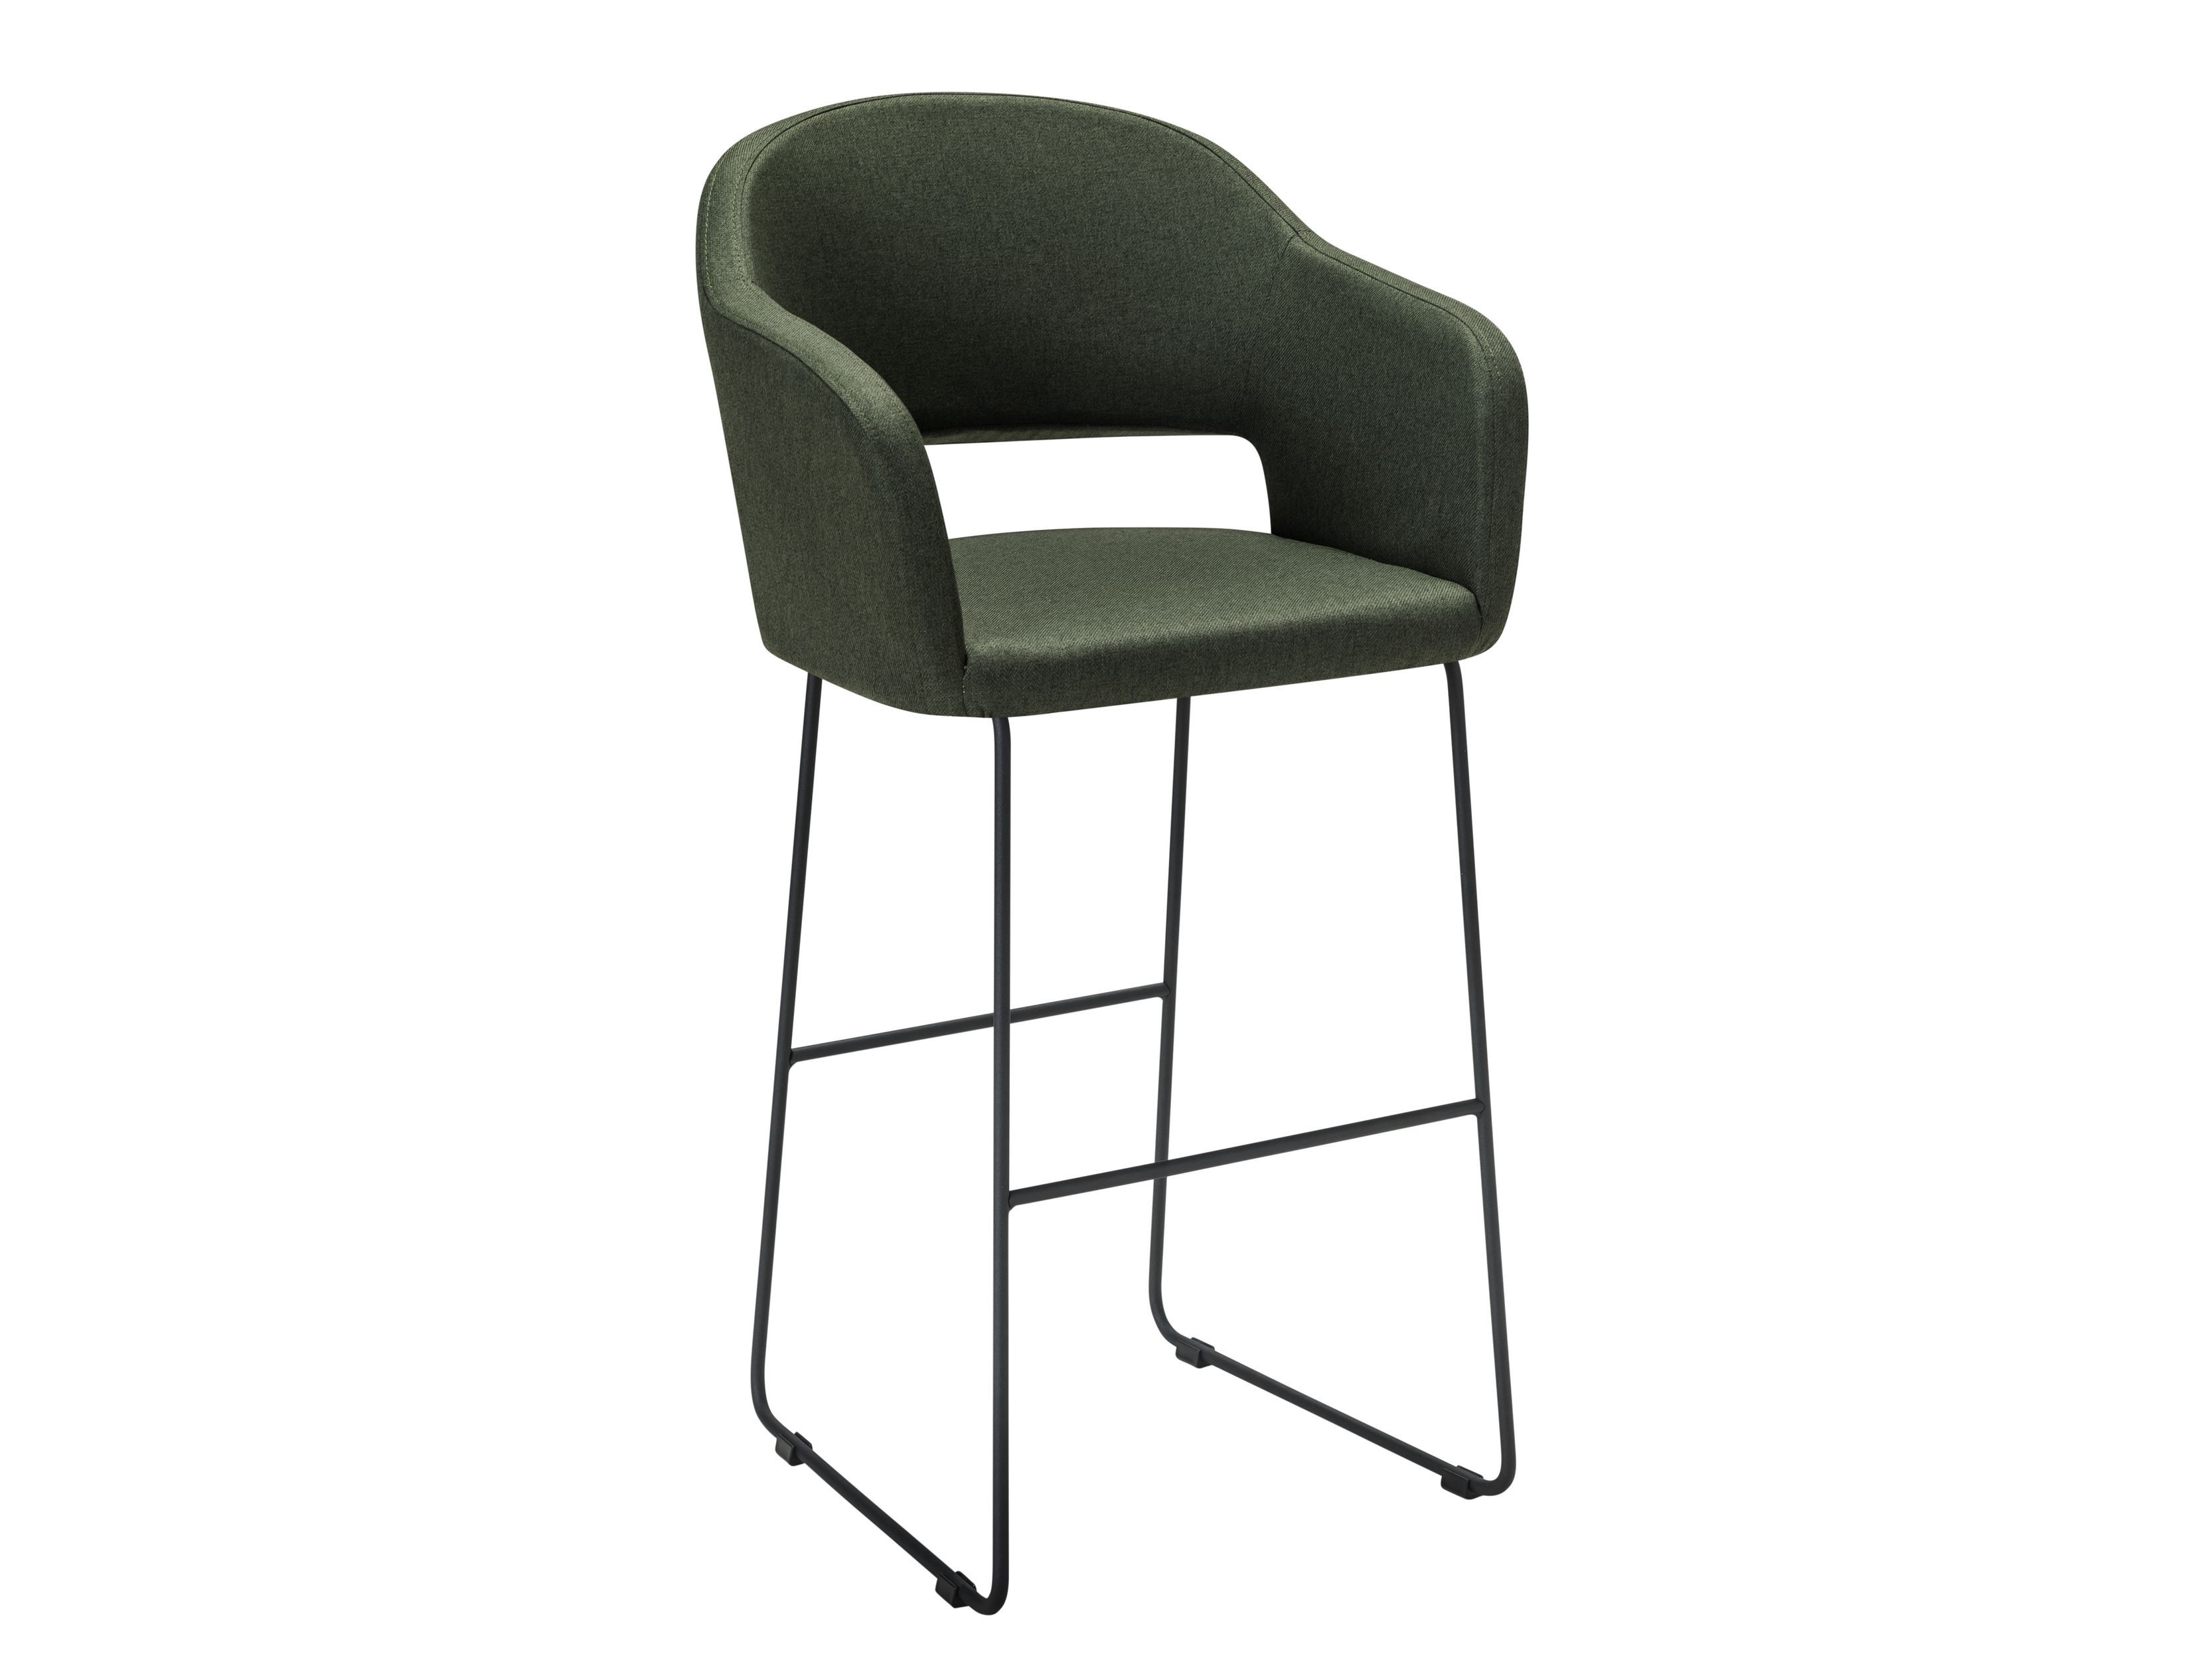 барное кресло oscar зеленый Кресло Бар. Oscar тёмно-зеленый/Линк Зеленый, Металл